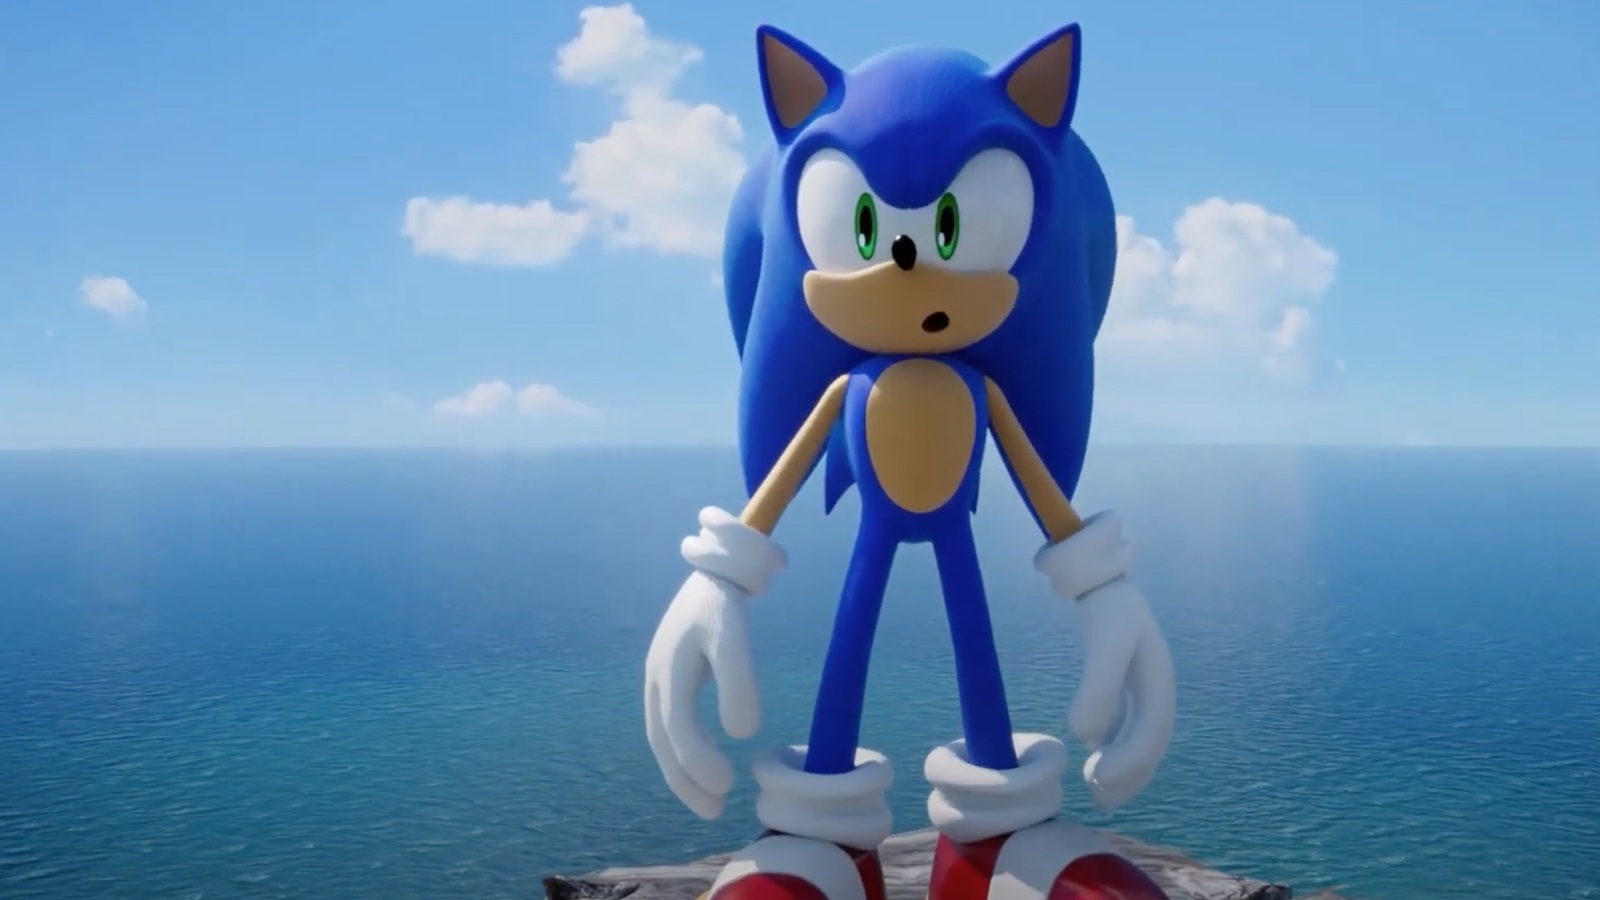 Похоже, в сеть просочилась дата релиза Sonic Frontiers - игра выйдет в ноябре